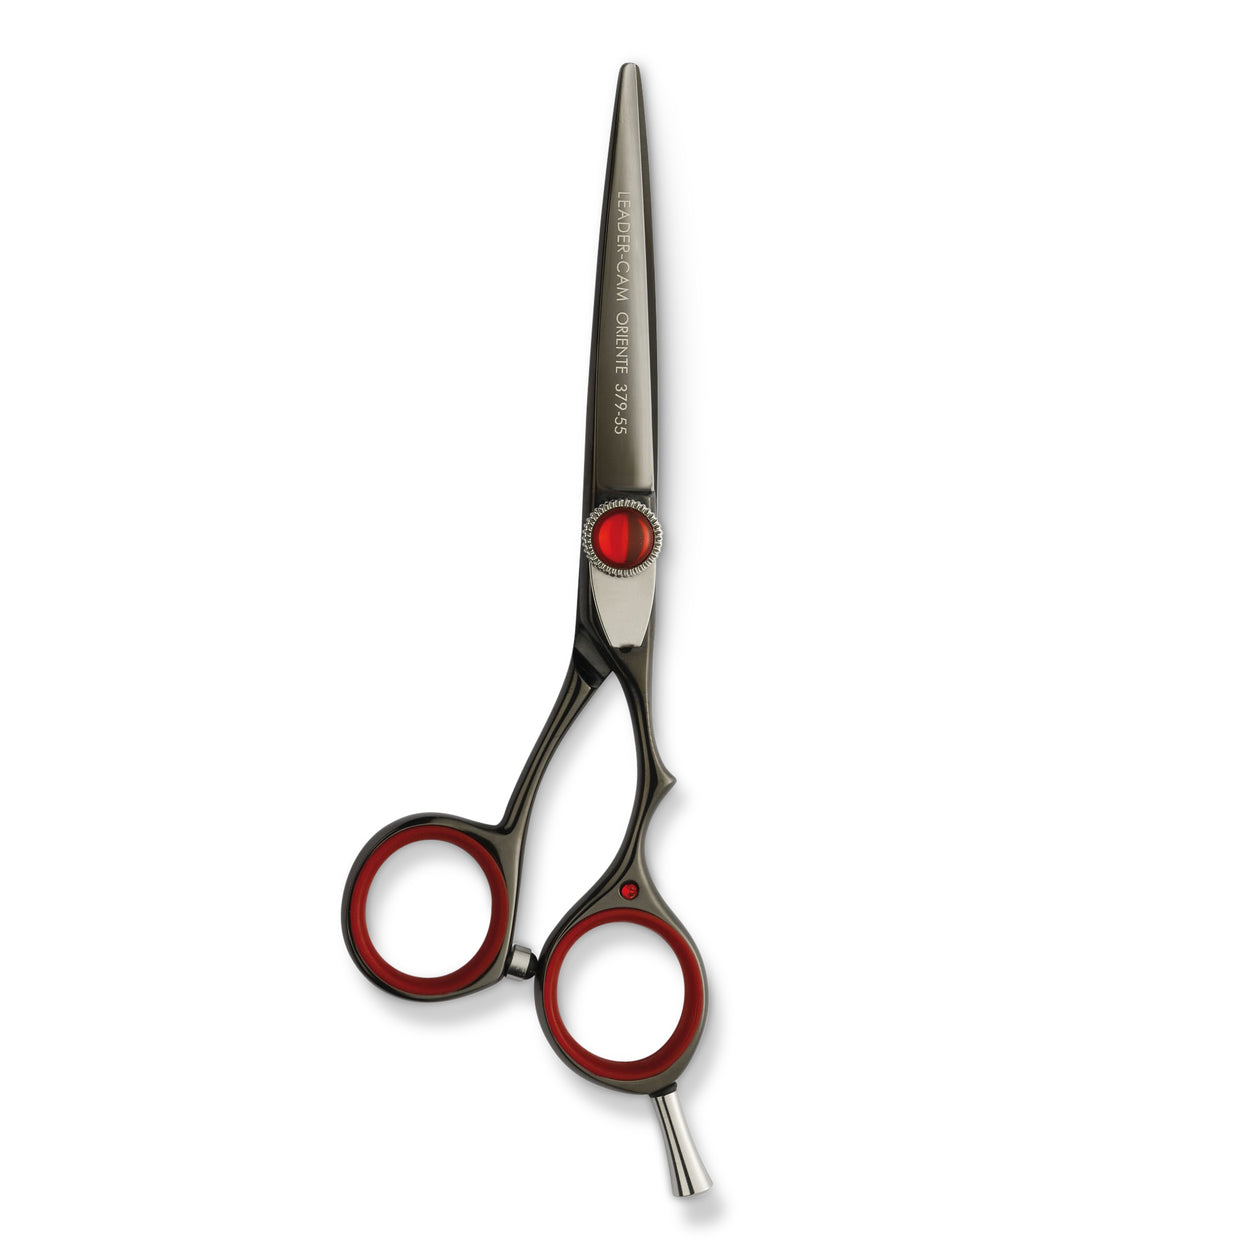 Leader Oriente 379 5.5 Scissor – Capelli Hair Extensions